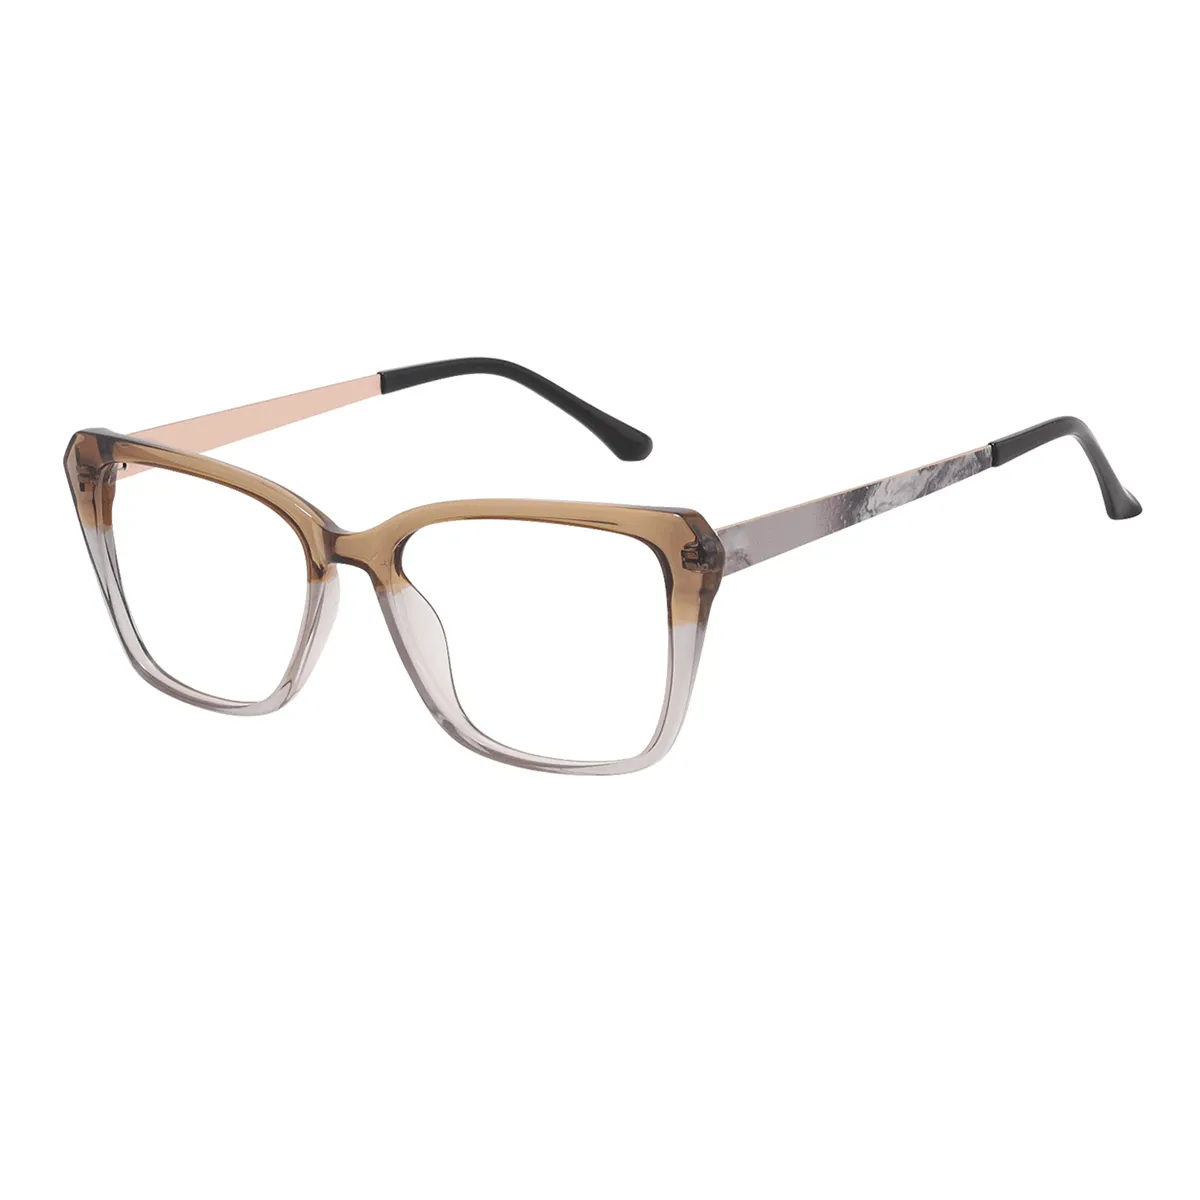 Kinney - Square Brown Glasses for Women